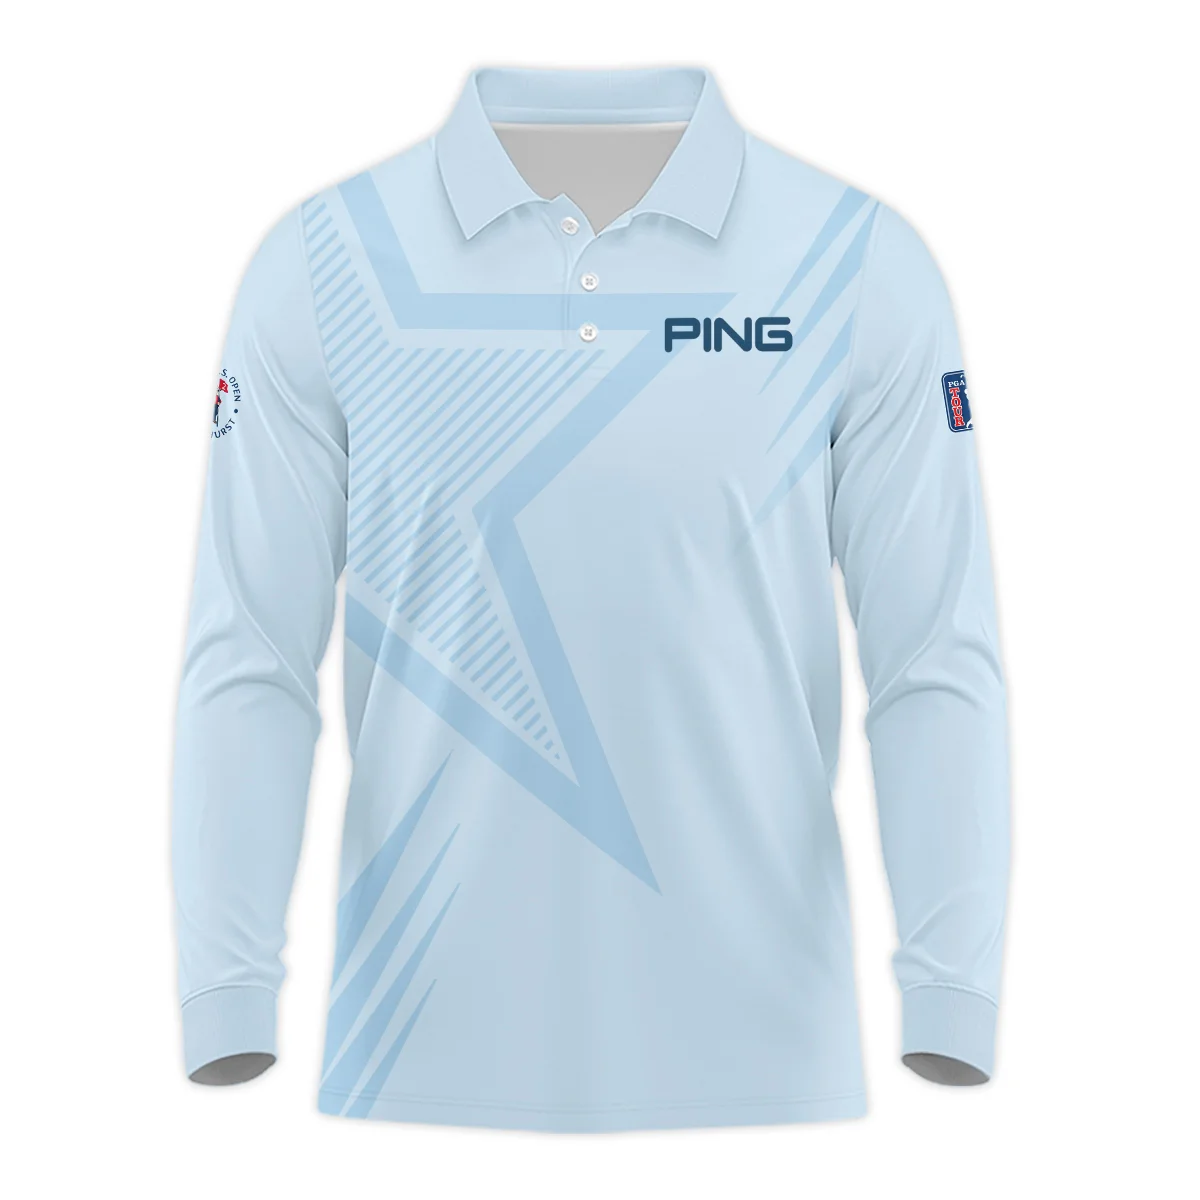 124th U.S. Open Pinehurst Golf Star Line Pattern Light Blue Ping Zipper Hoodie Shirt Style Classic Zipper Hoodie Shirt